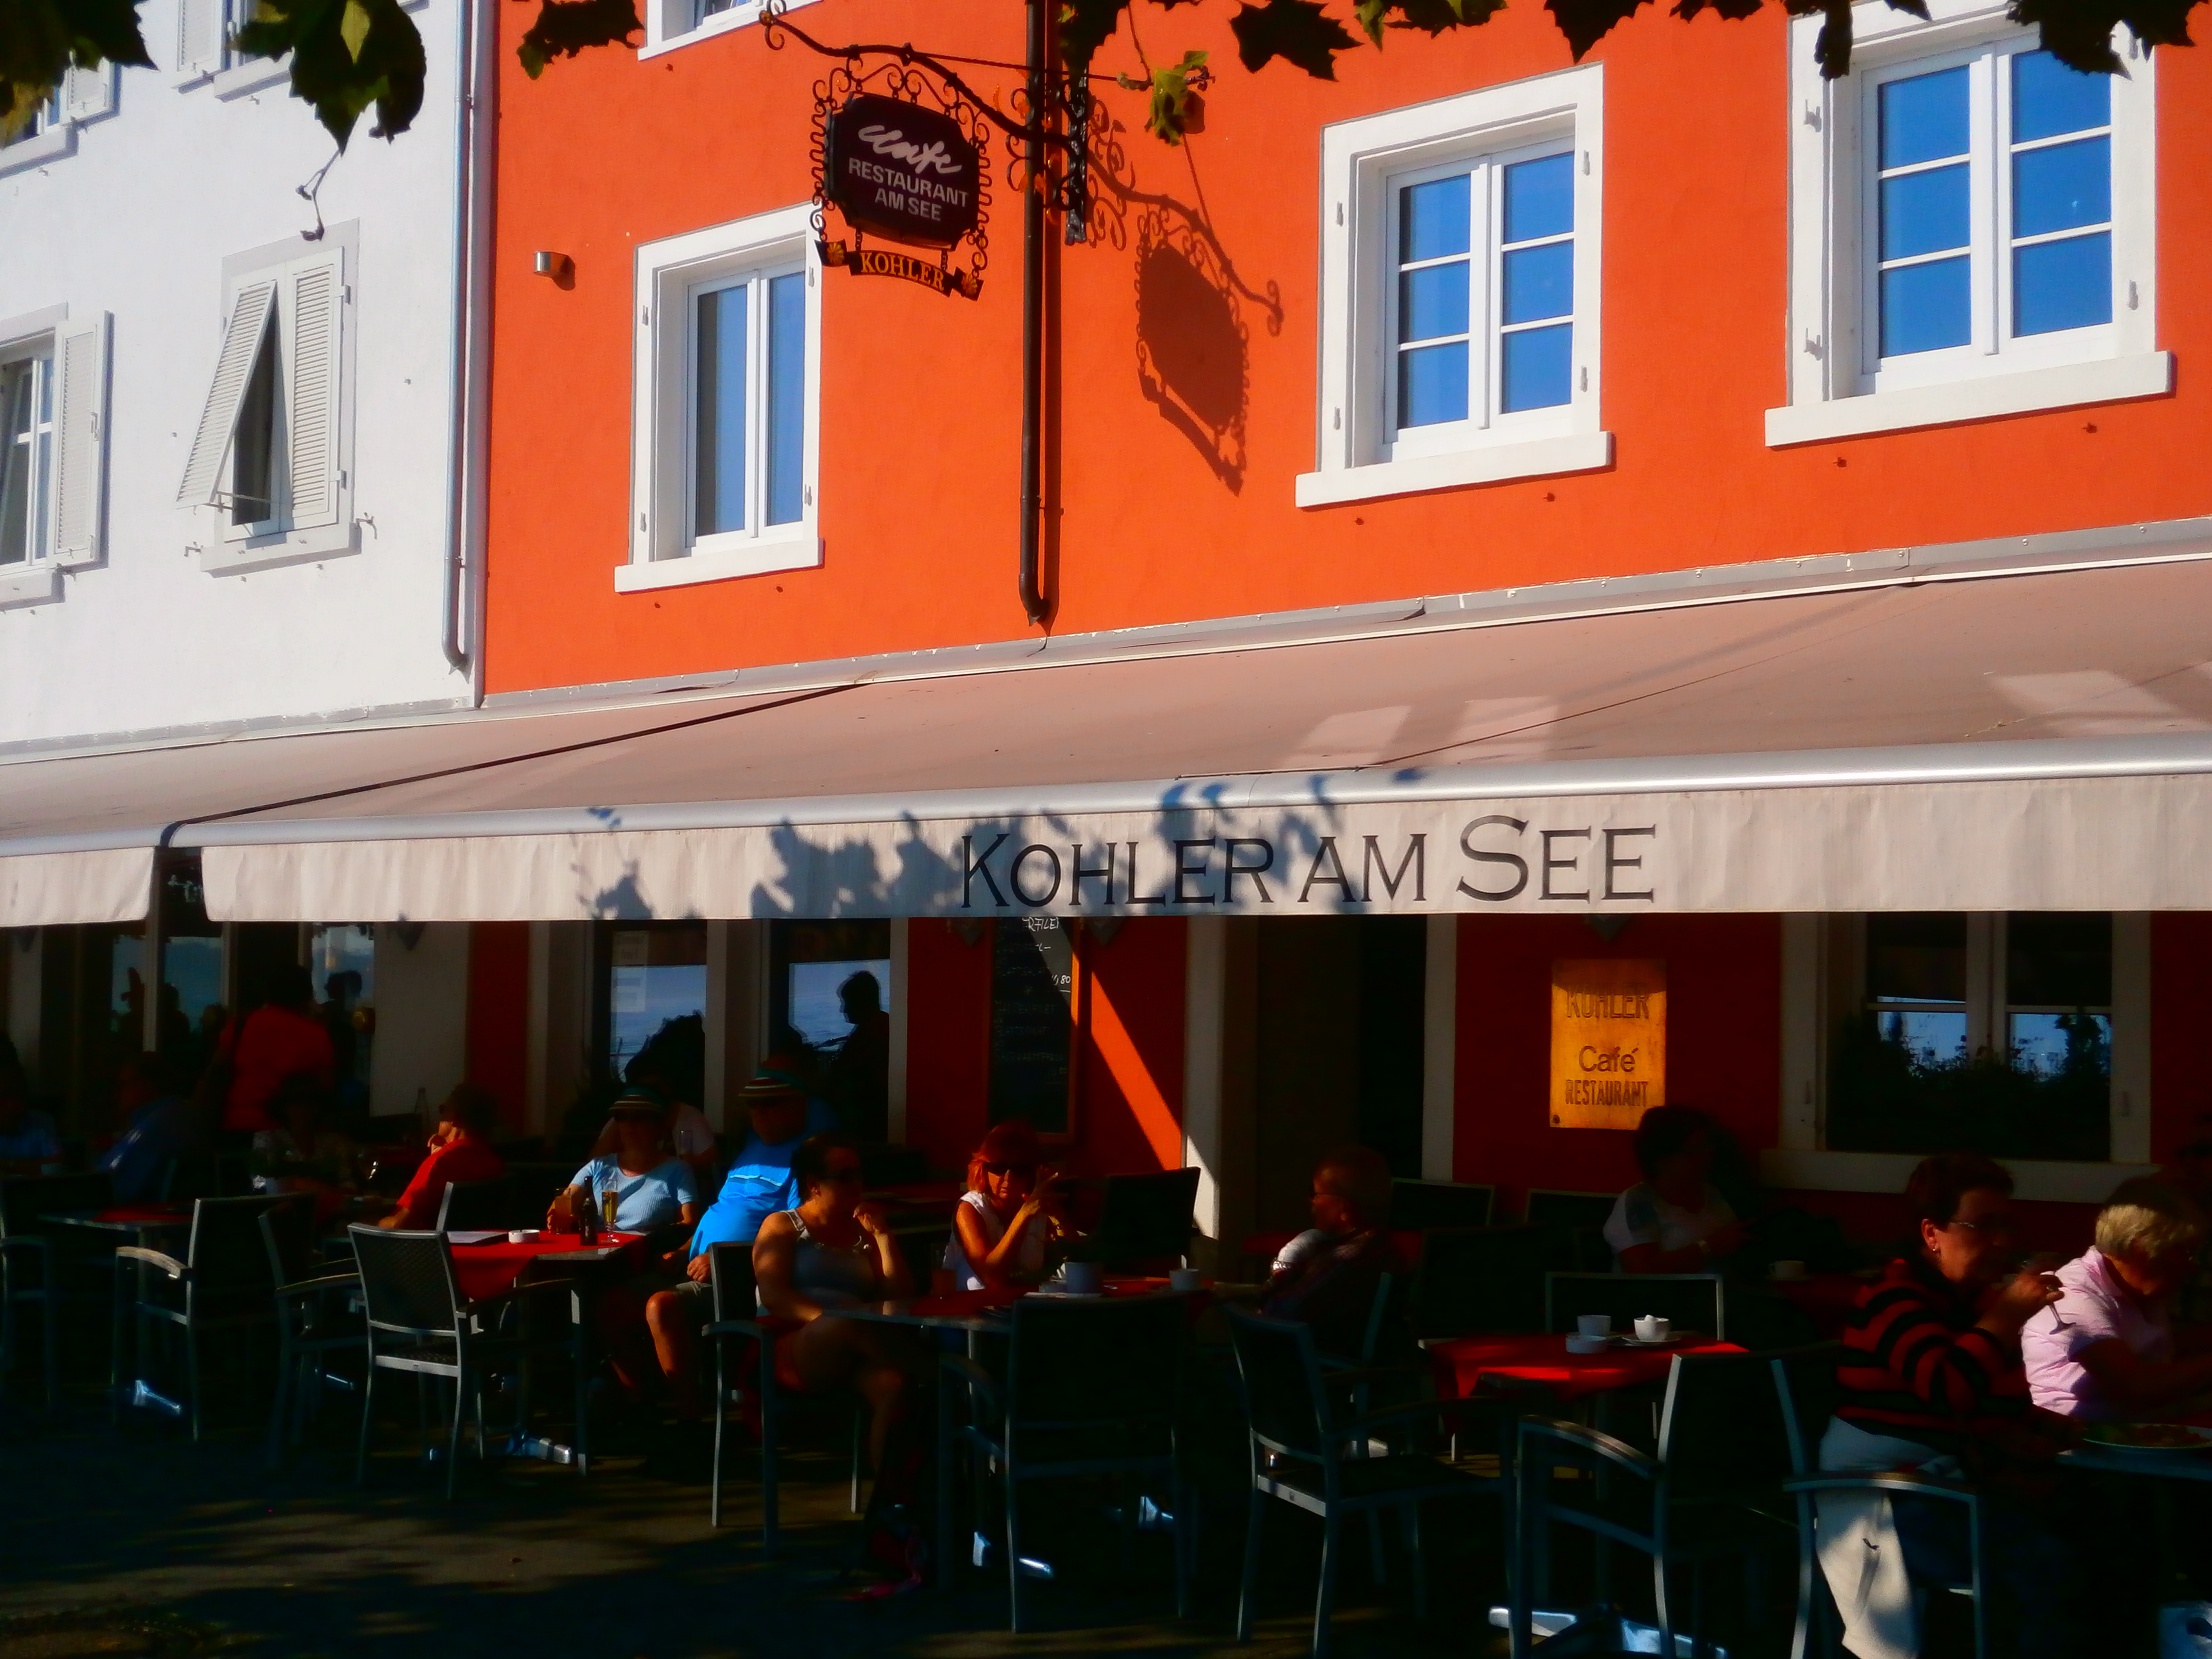 Bild 1 Alexander Kohler Cafe am See in Meersburg